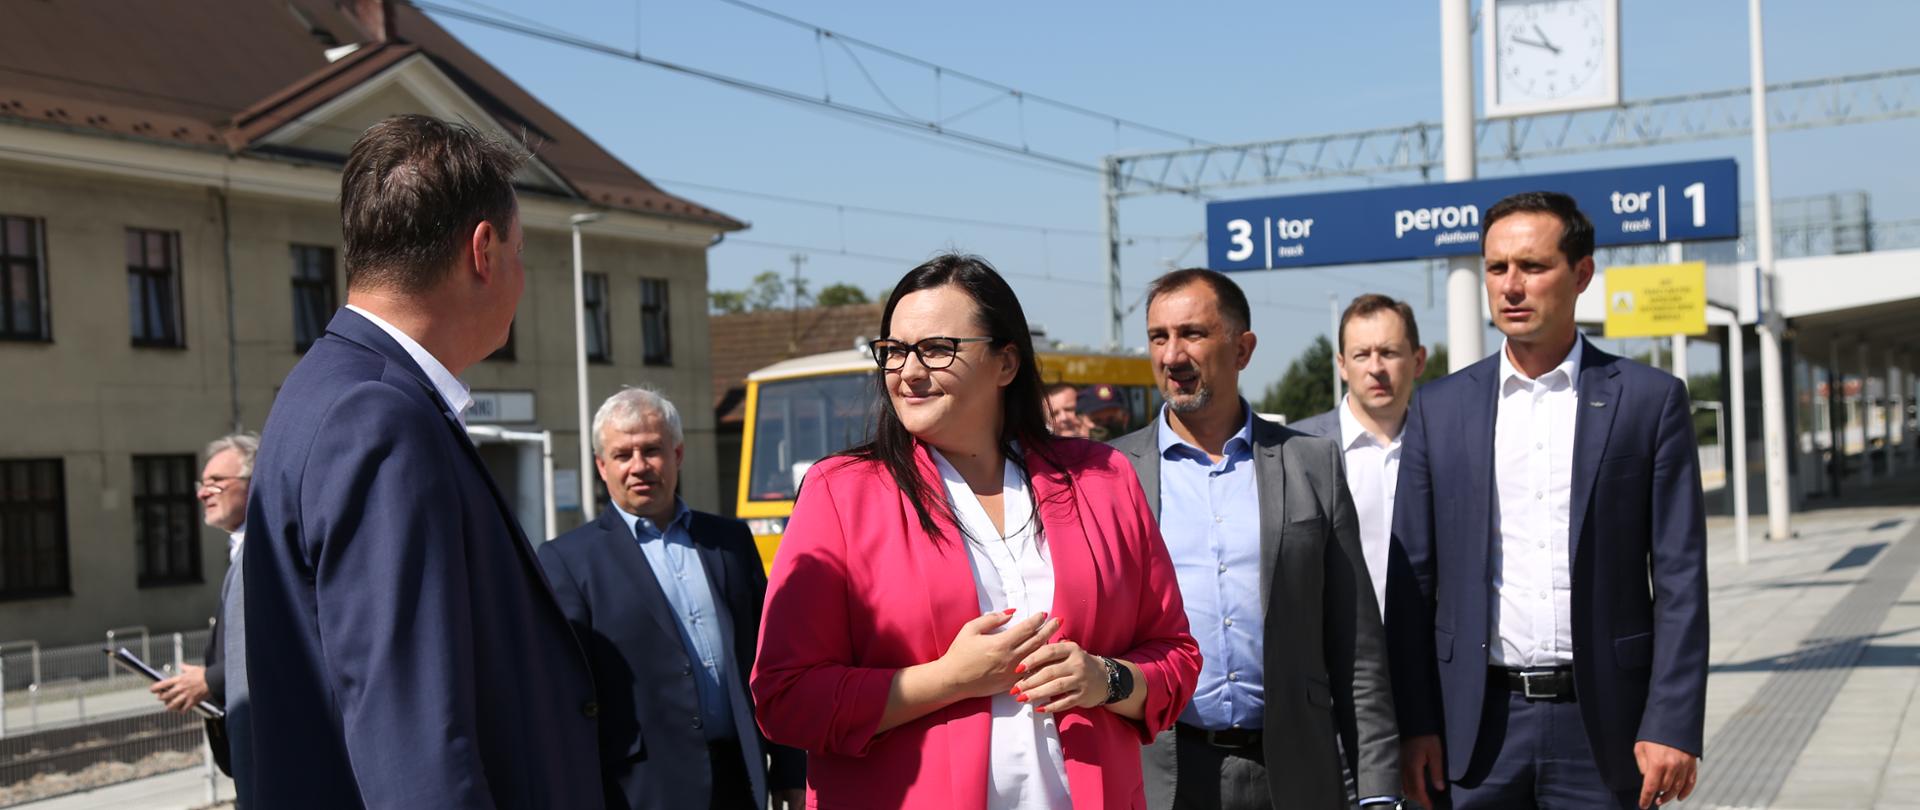 na zdjęciu widoczna na peronie grupa osób, wśród nich minister Małgorzata Jarosińska-Jedynak